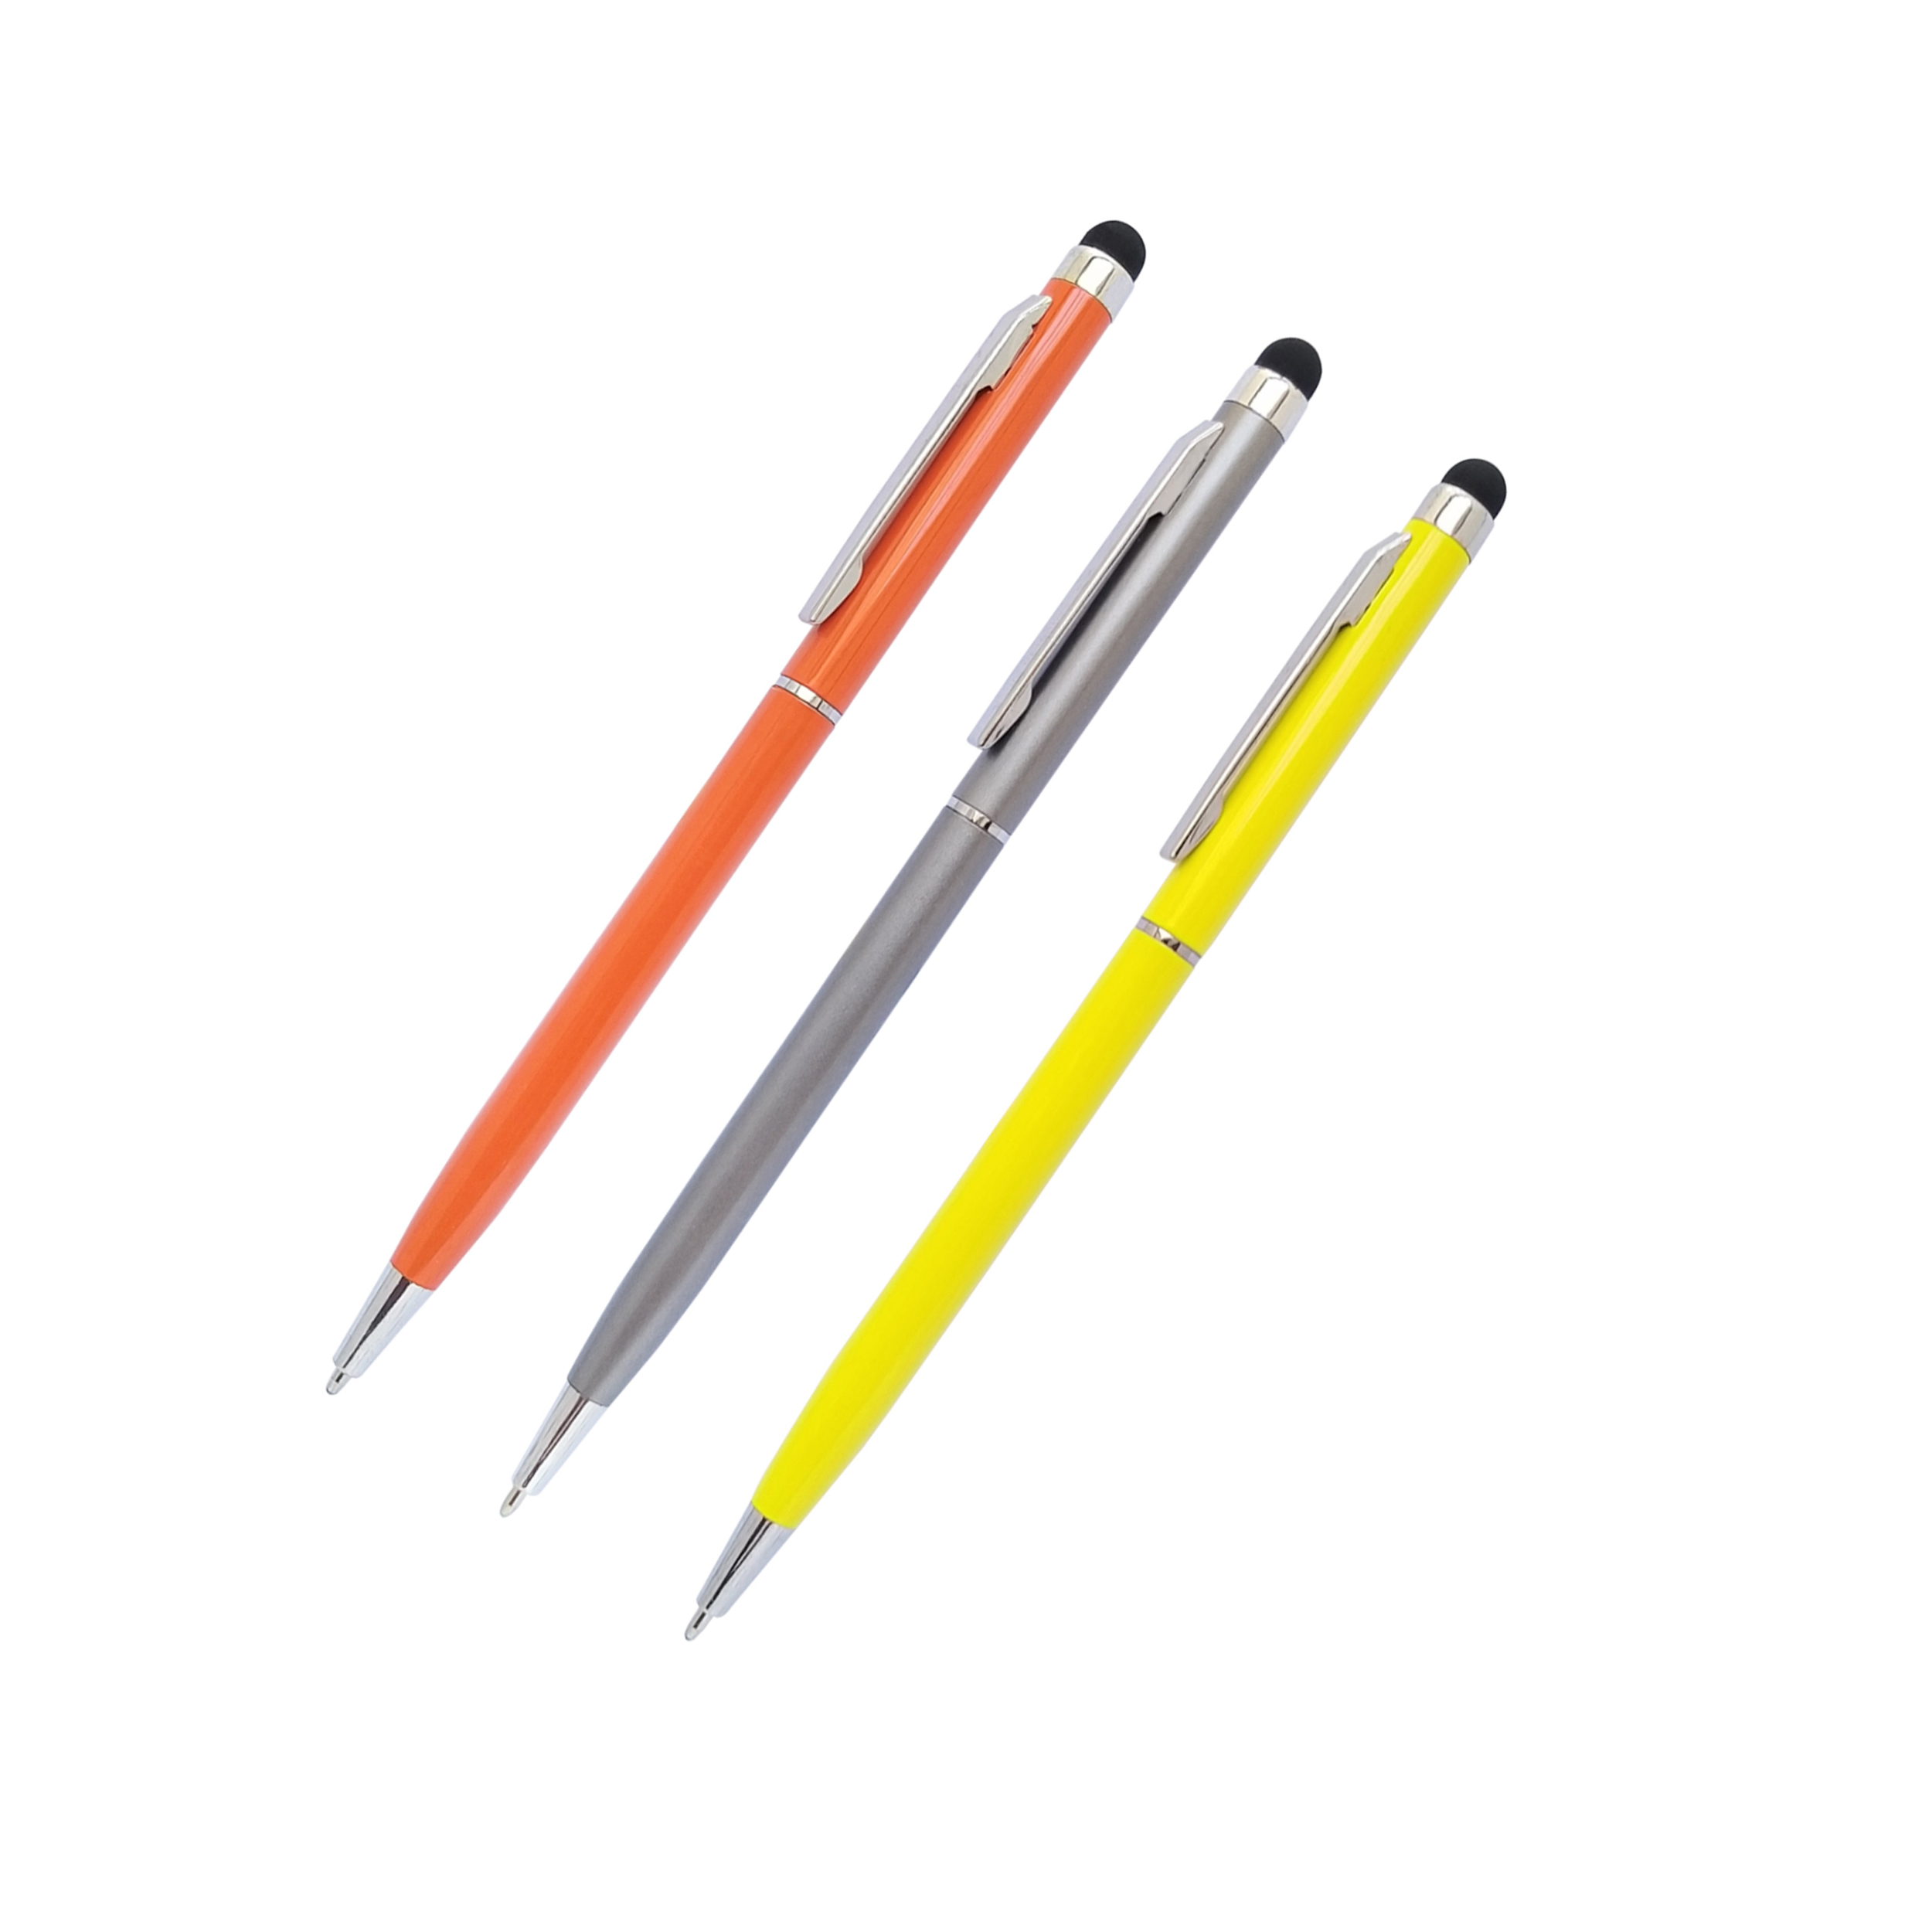 قلم لمسی مدل SKJMZXQ002369 بسته سه عددی